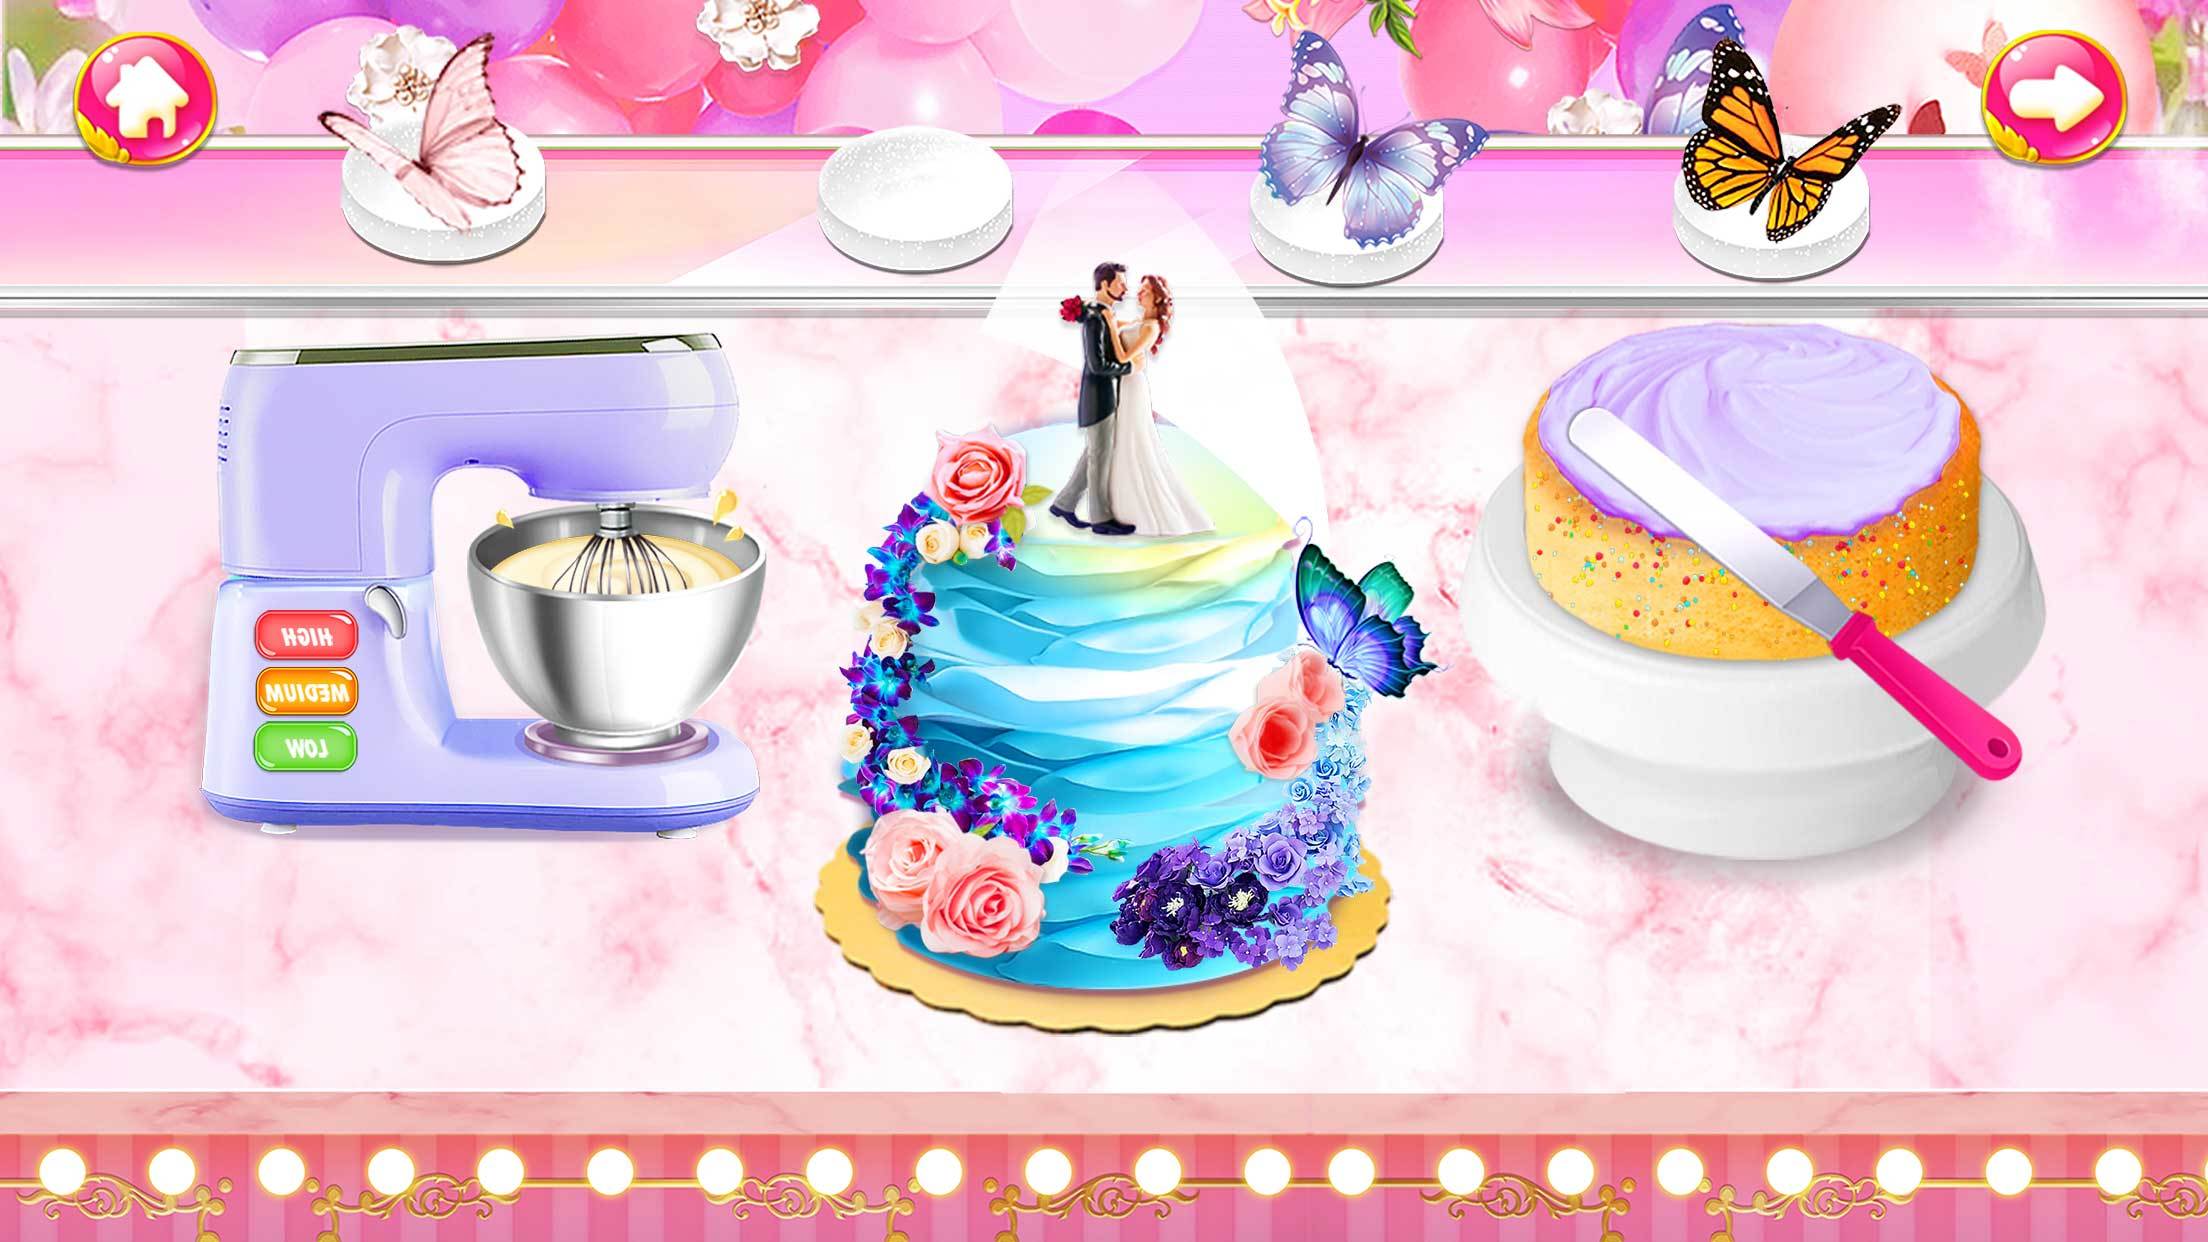 Screenshot 1 of Свадебный торт: кулинарные игры 1.5